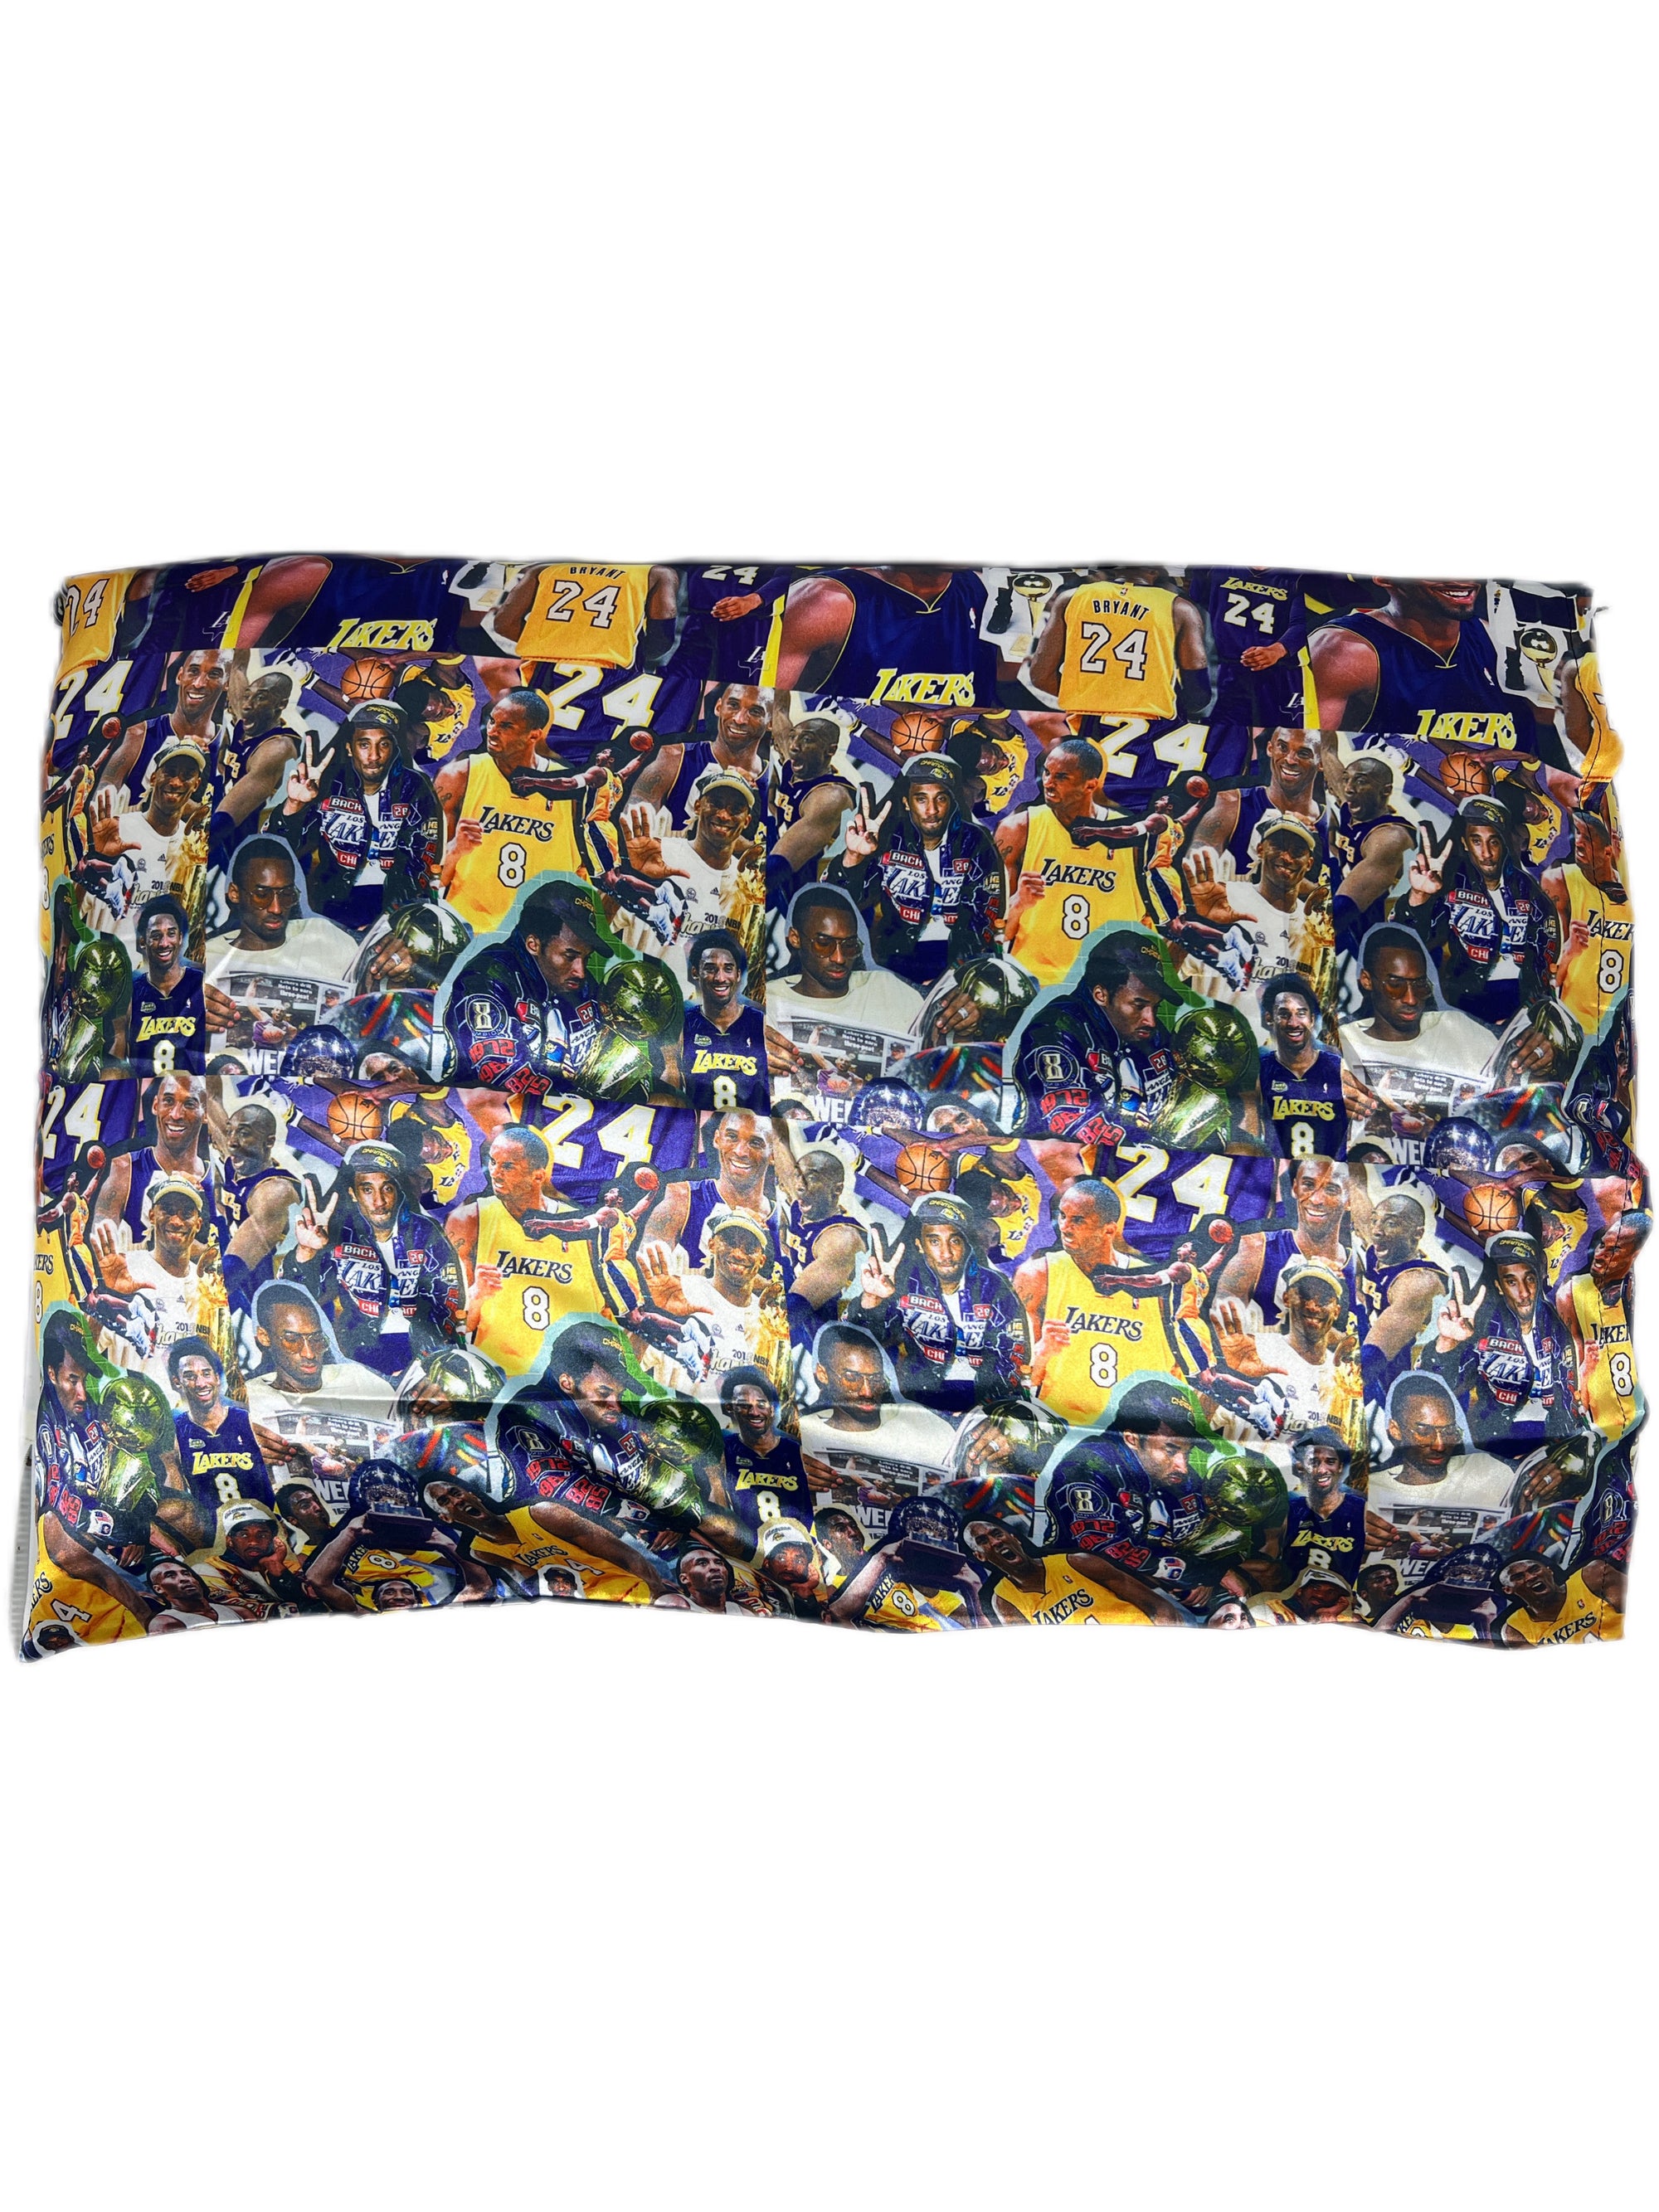 Kobe Satin Pillowcase - Double R Rags